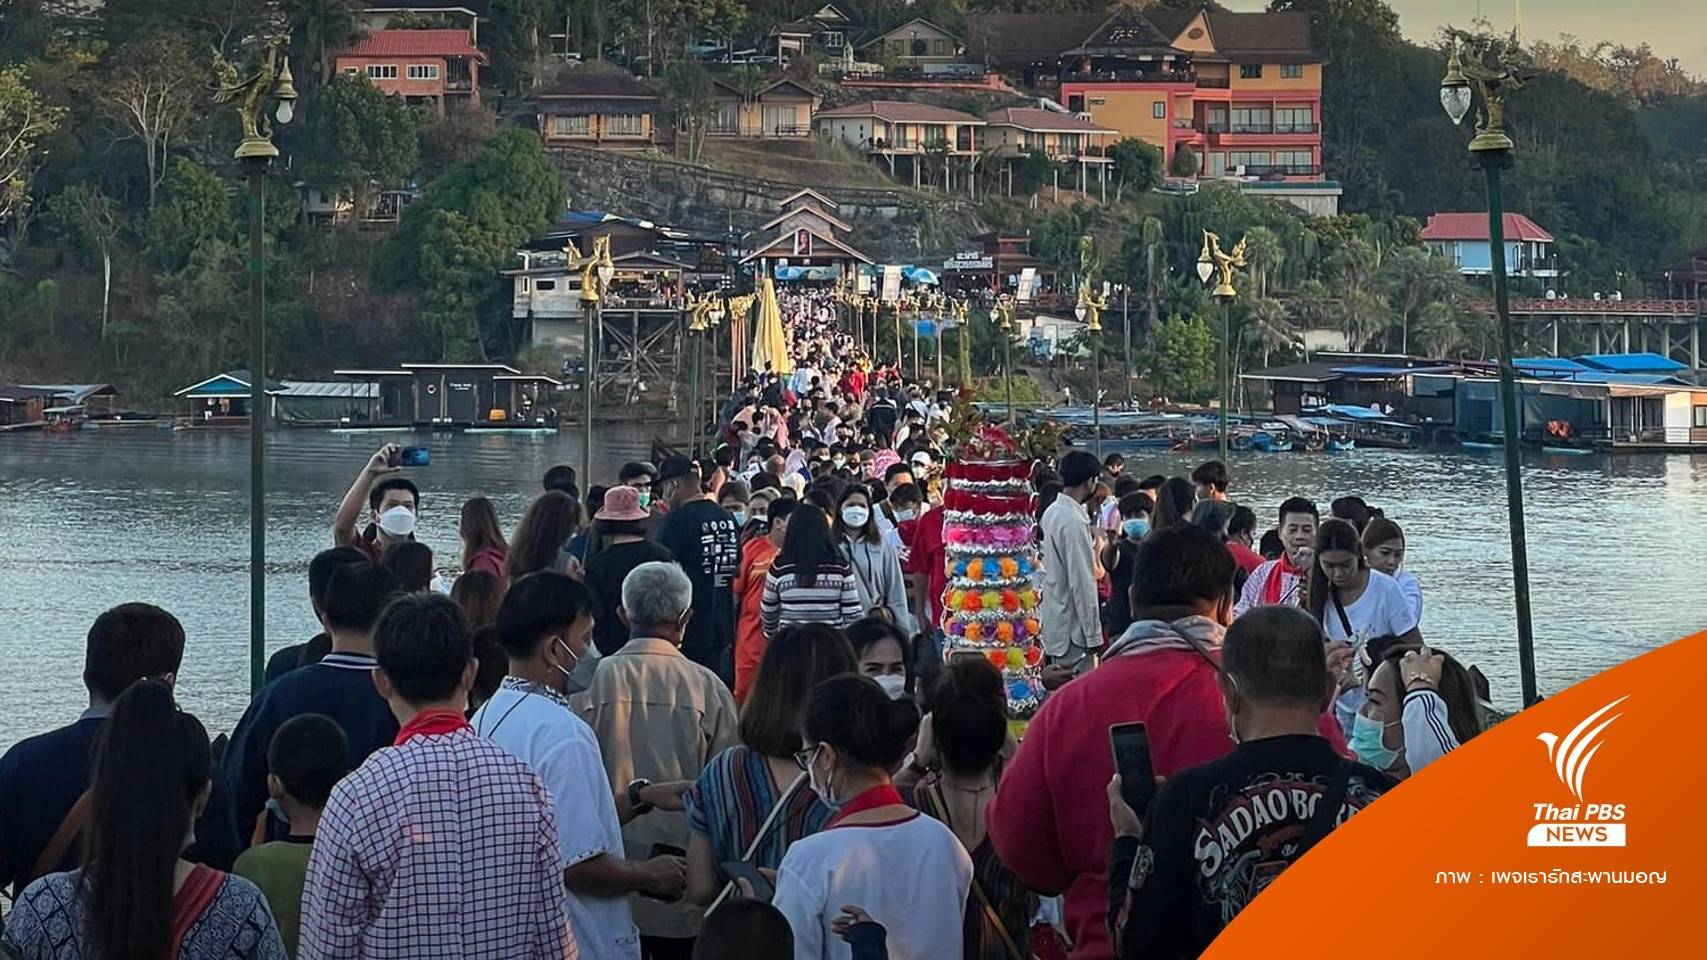 "กาญจนบุรี" จำกัดคนเที่ยวสะพานมอญ 500 คนต่อครึ่งชม.ห่วงพัง